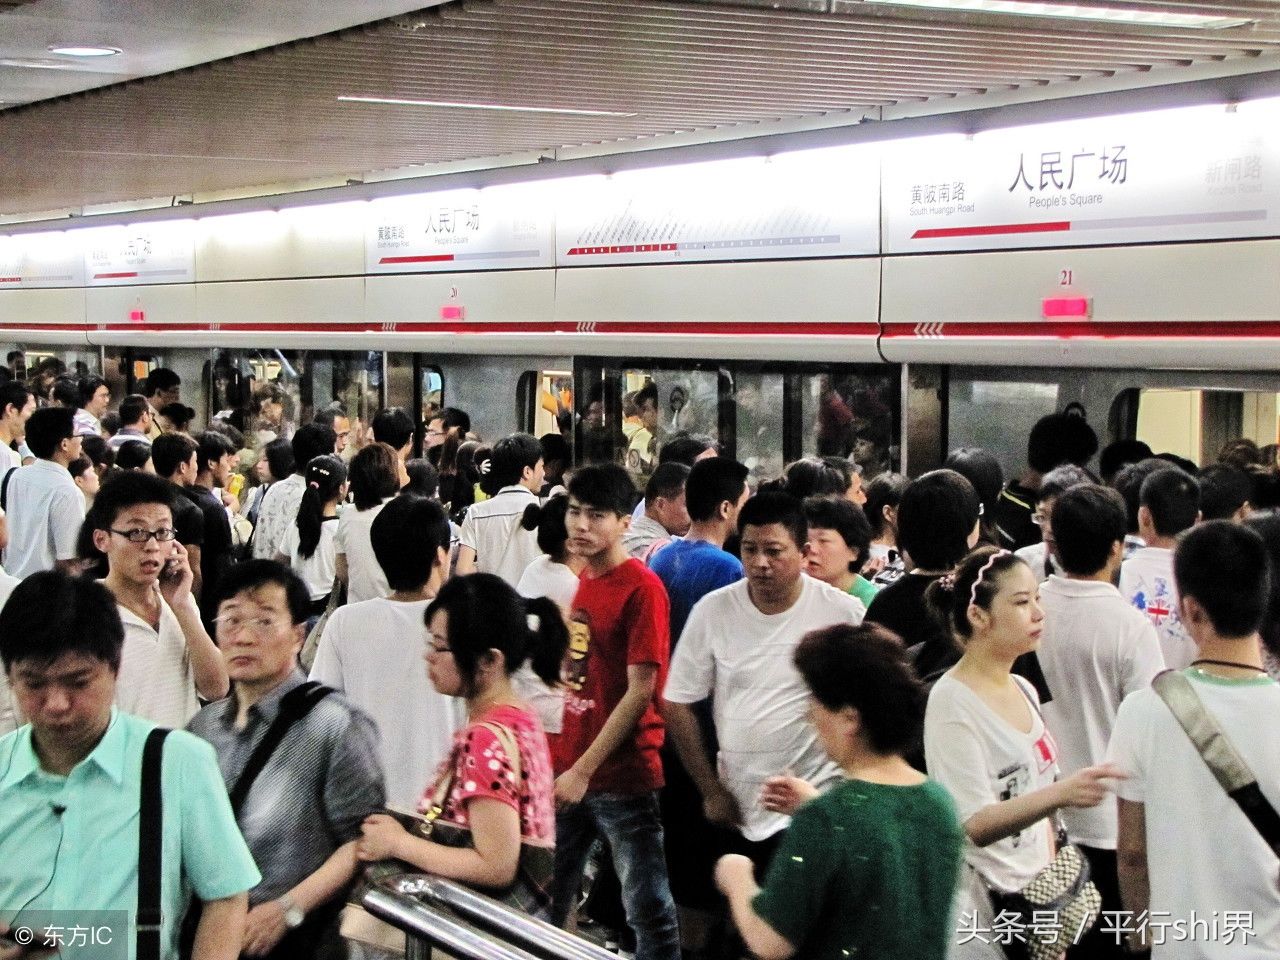 2011年6月29日,上海地铁人民广场站的乘客拥挤.(图片来自东方ic)